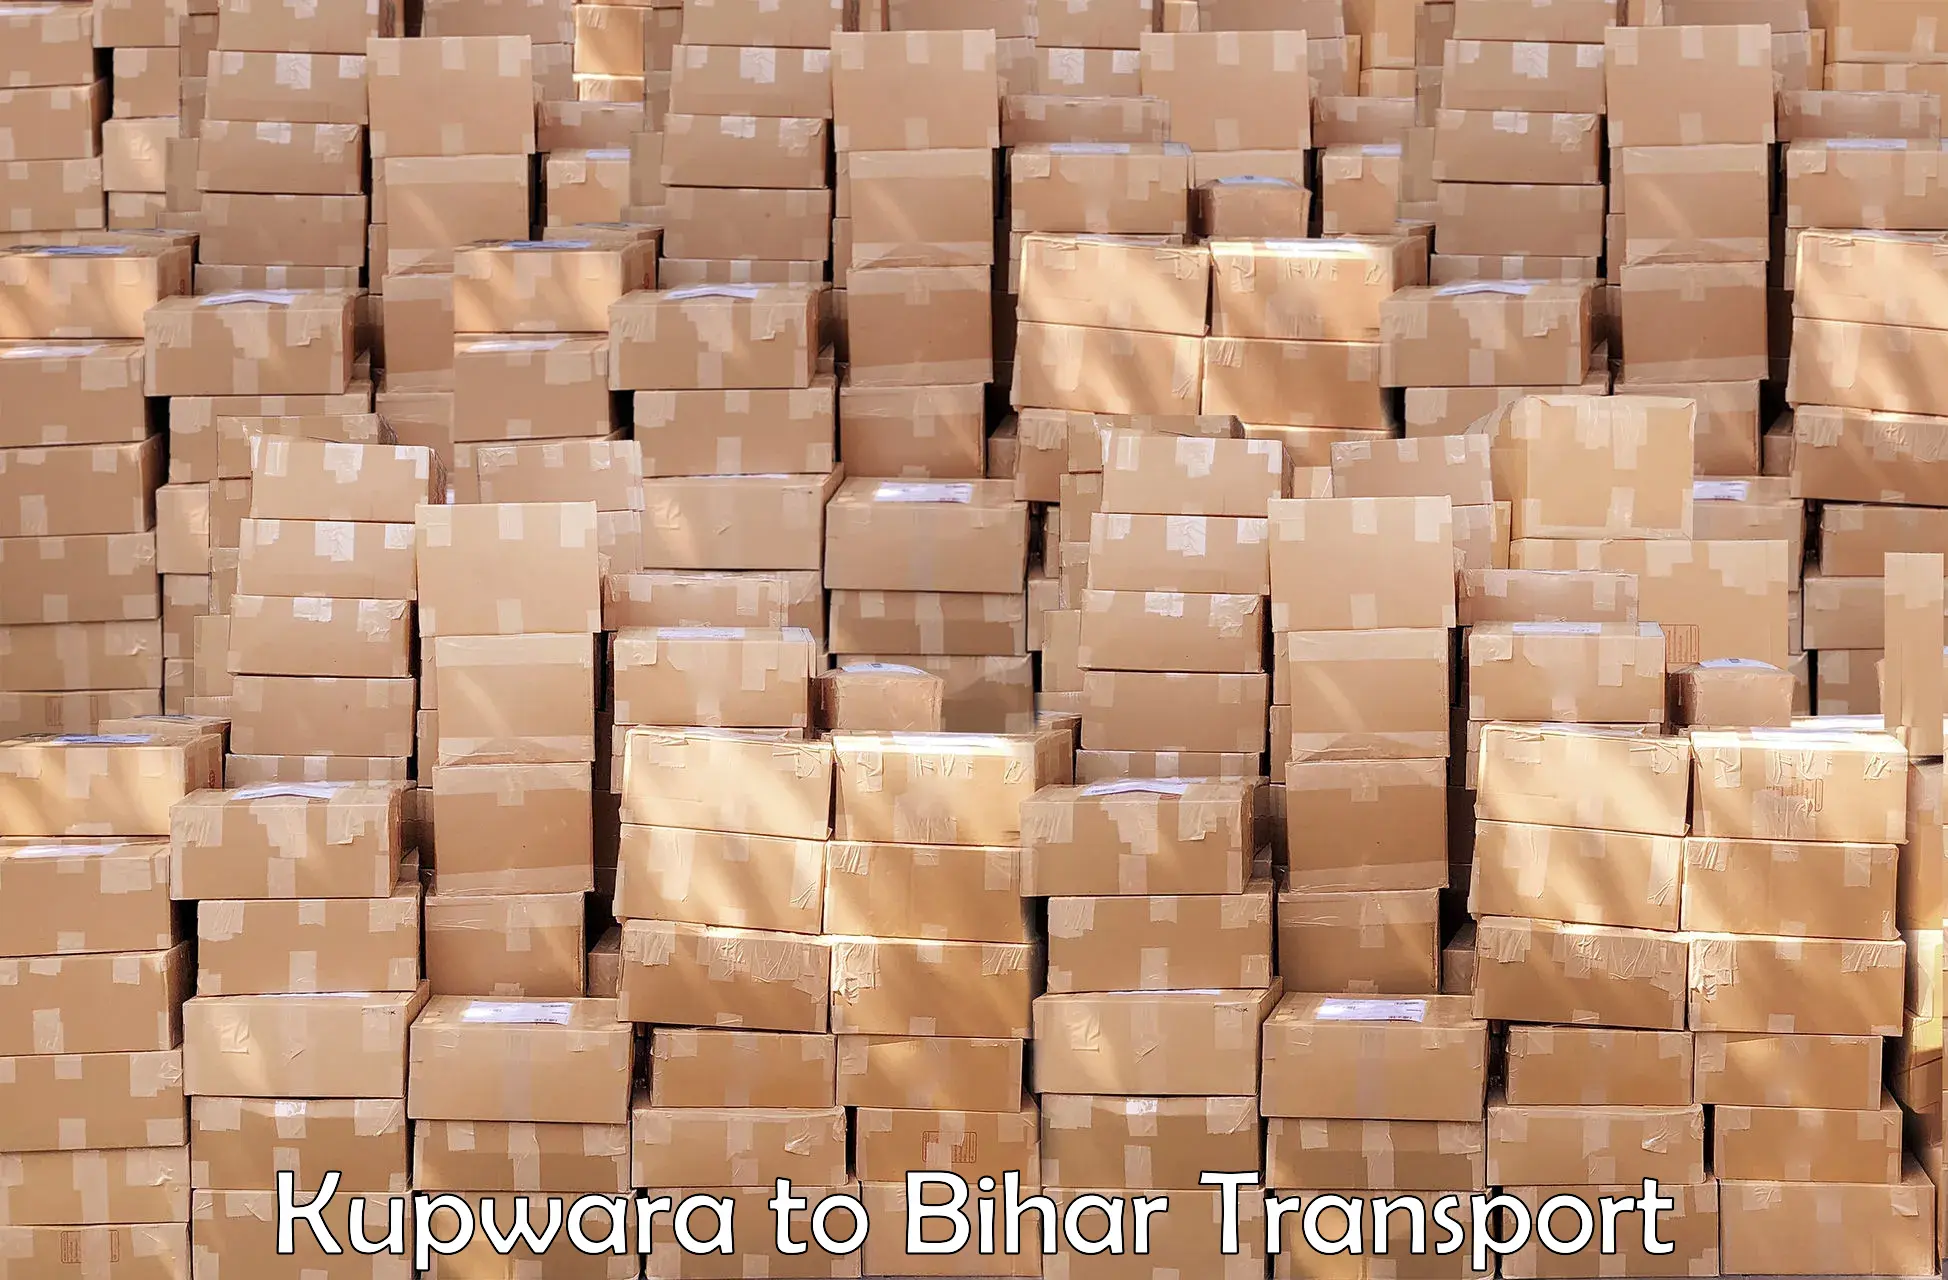 Bike transport service Kupwara to Bihar